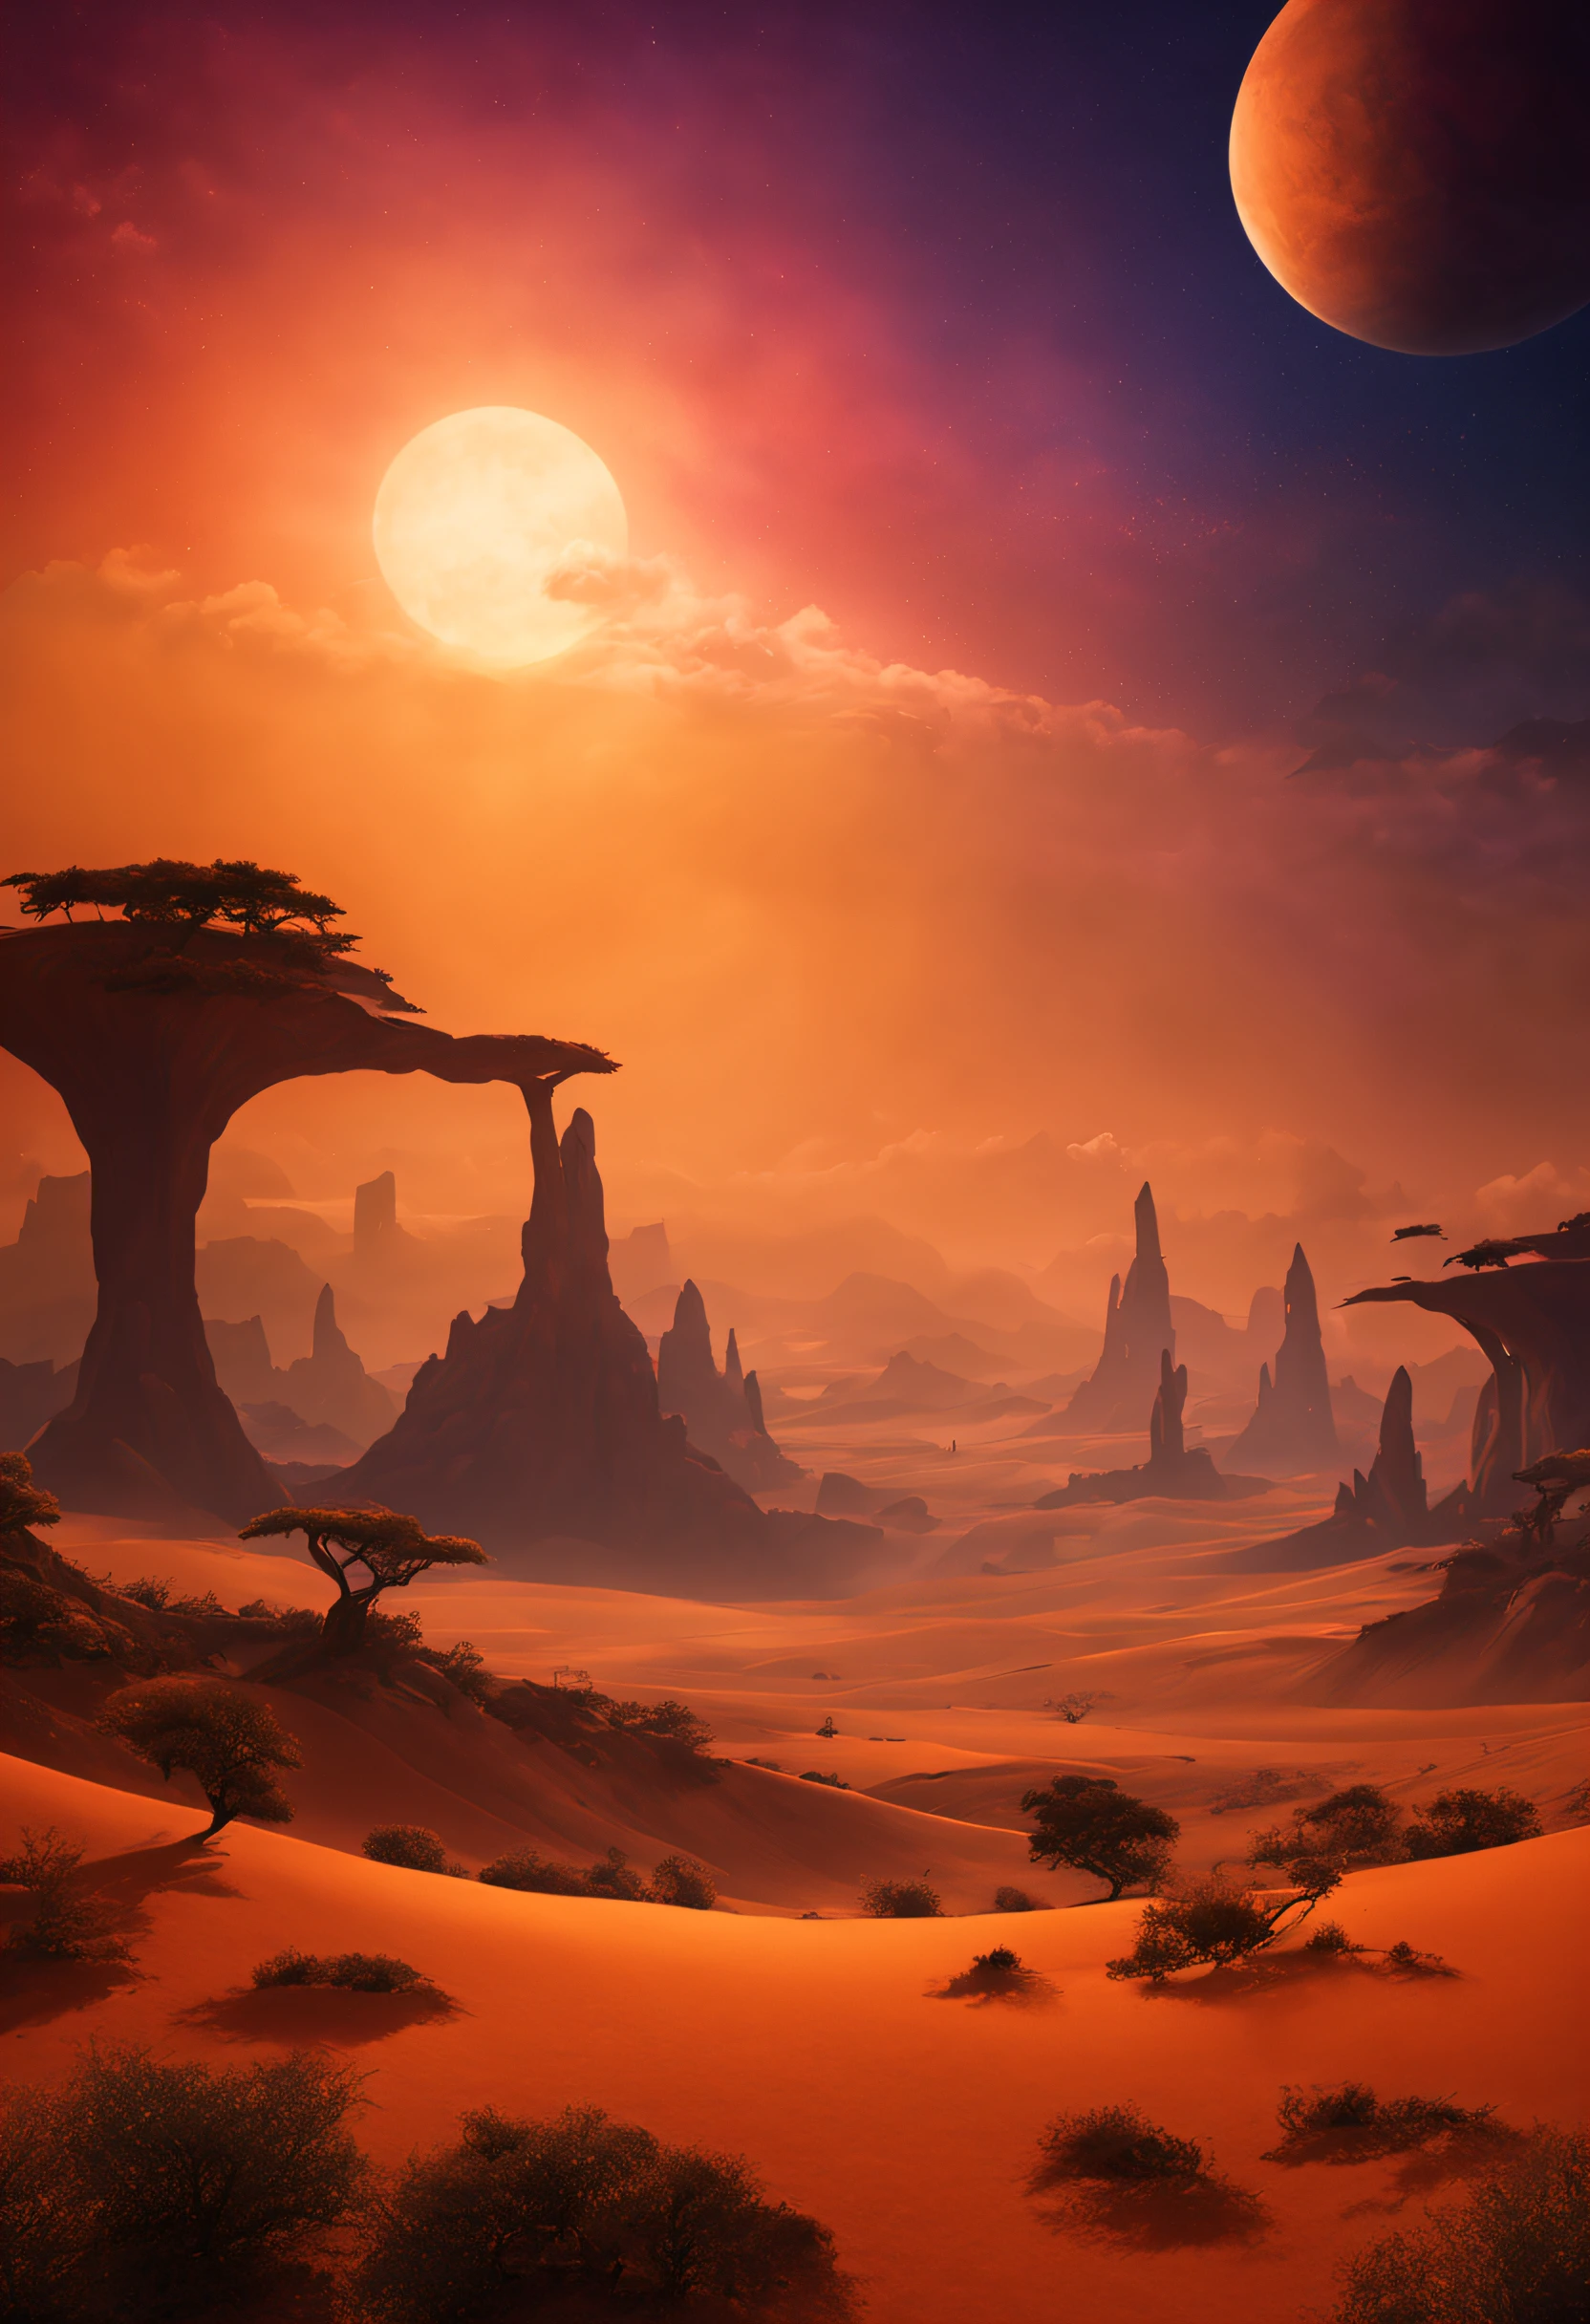 色とりどりの夕日と異常な砂埃色の風が吹くエキゾチックな惑星の美しく壮大な想像上の風景